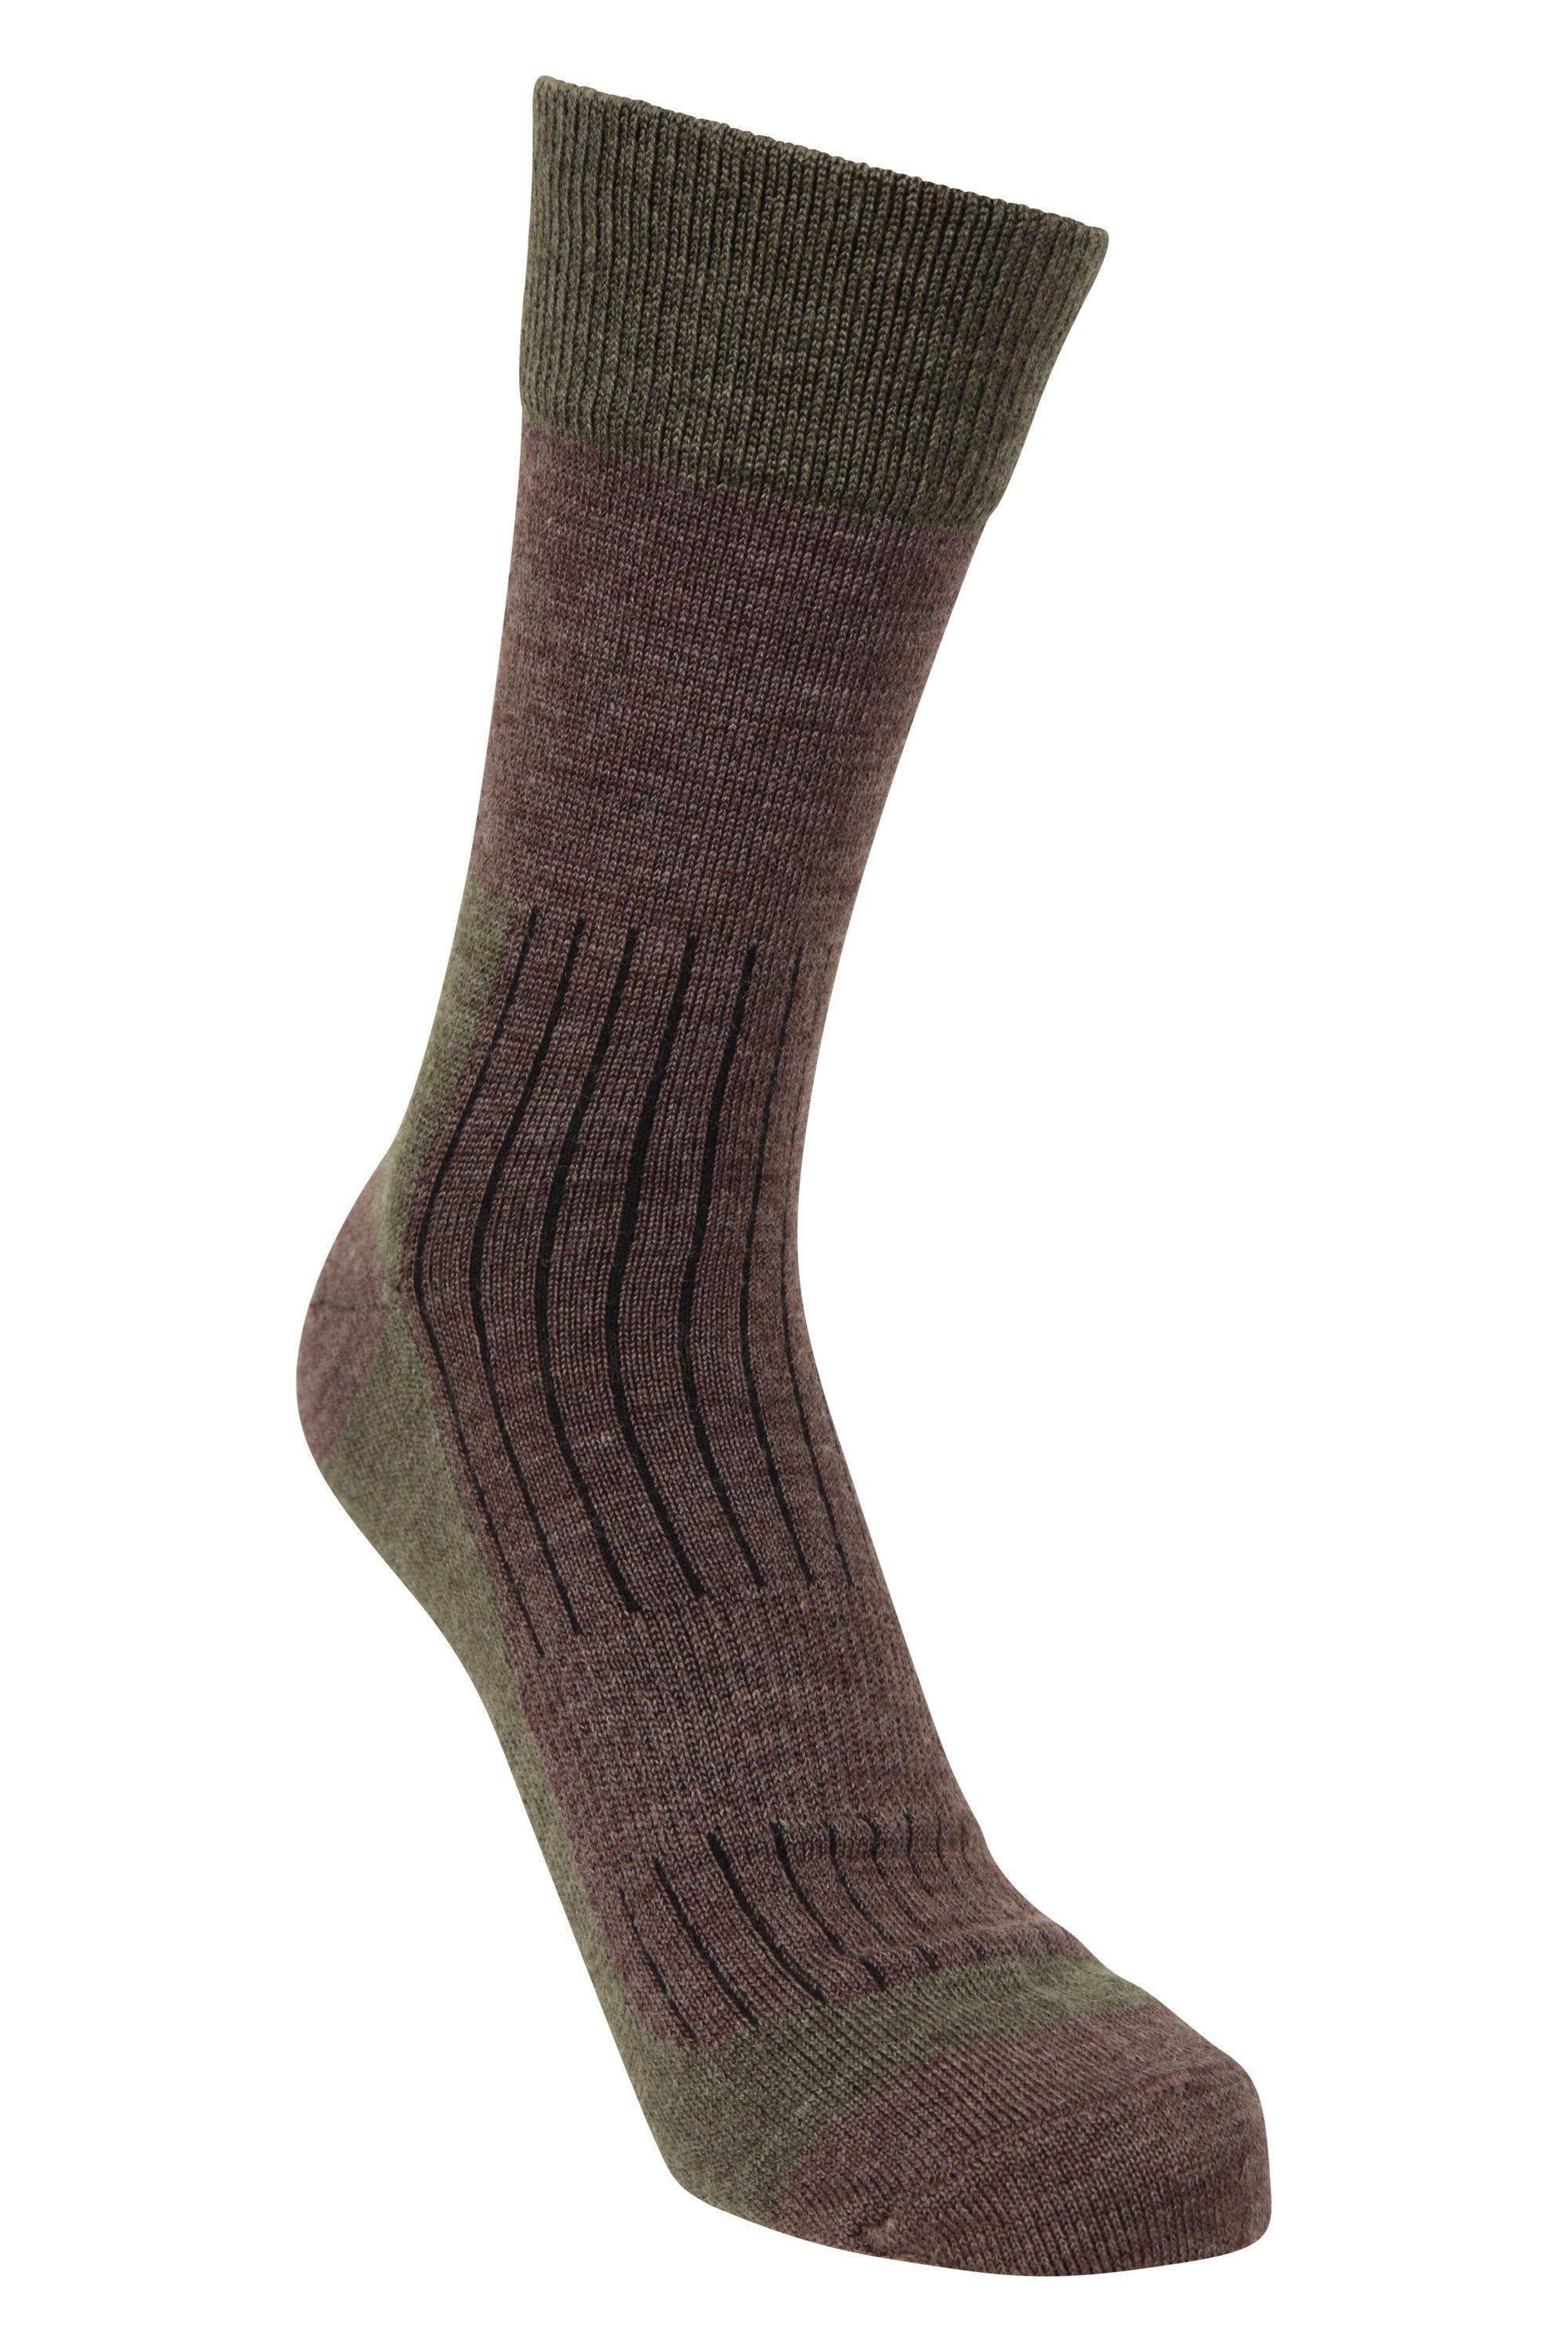 Носки из мериноса до середины икры легкие, прочные и дышащие Mountain Warehouse, хаки носки мужские утепленные из шерсти мериноса 5 пар